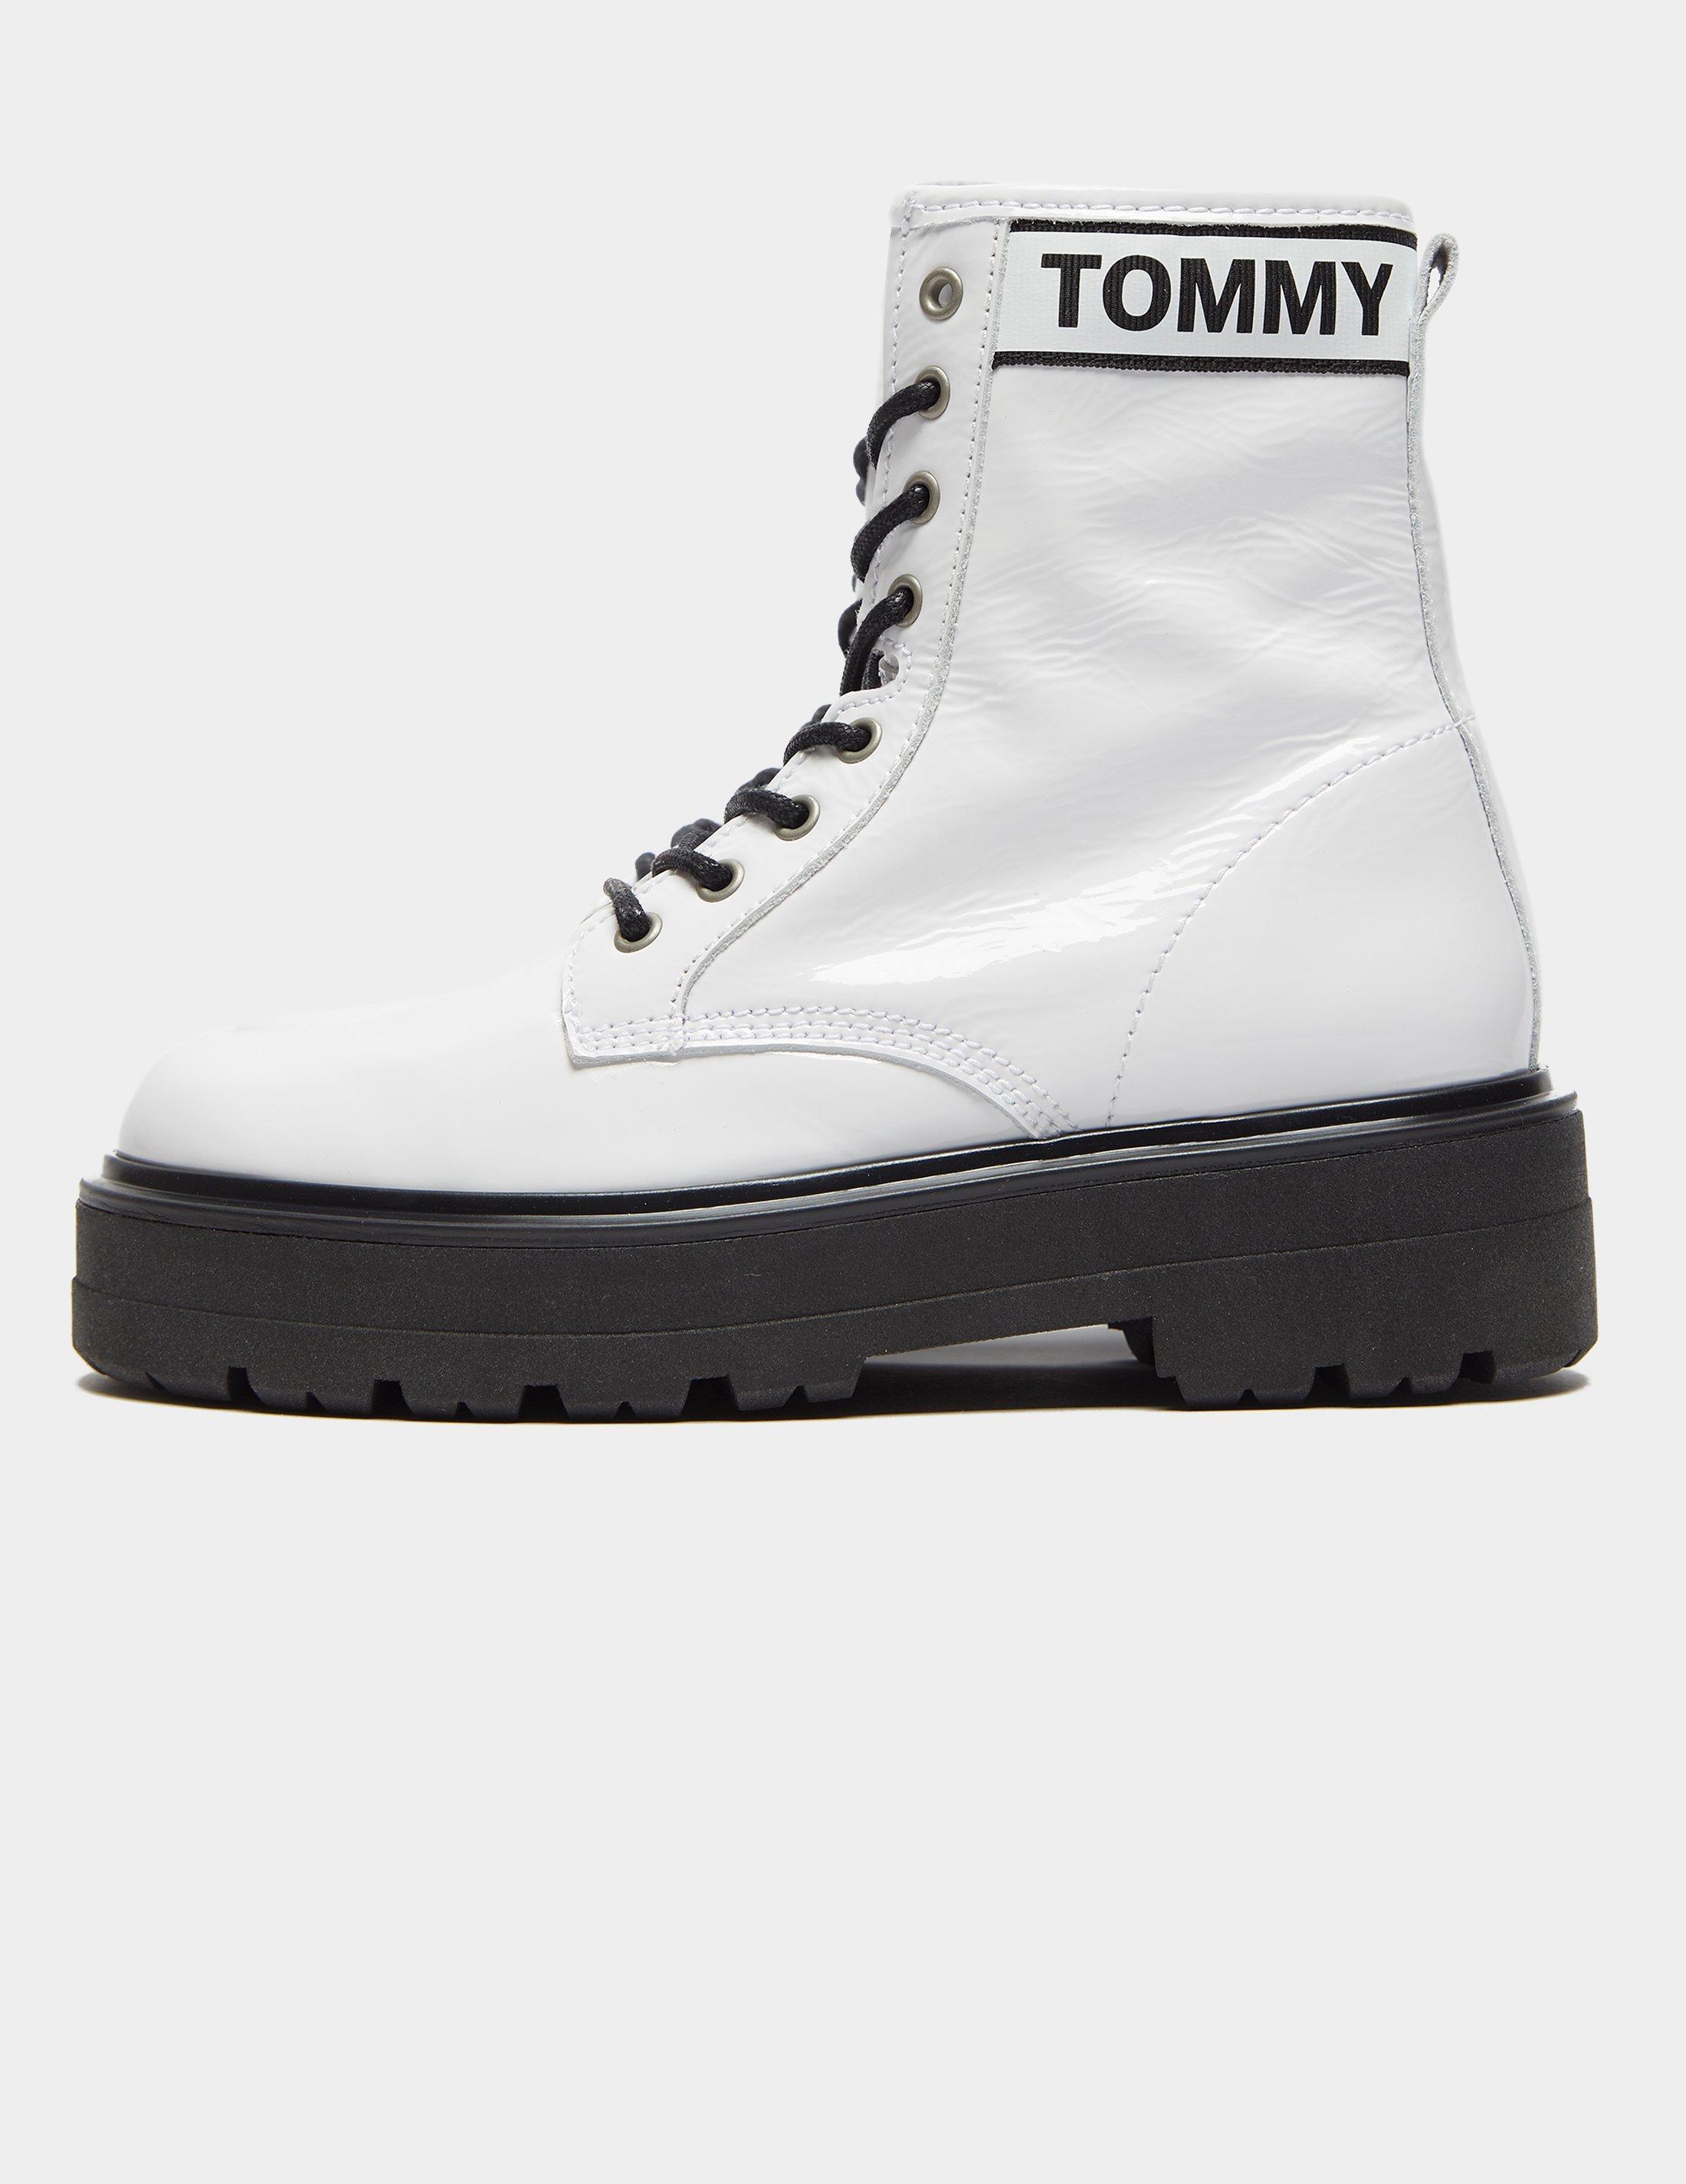 tommy hilfiger platform boots